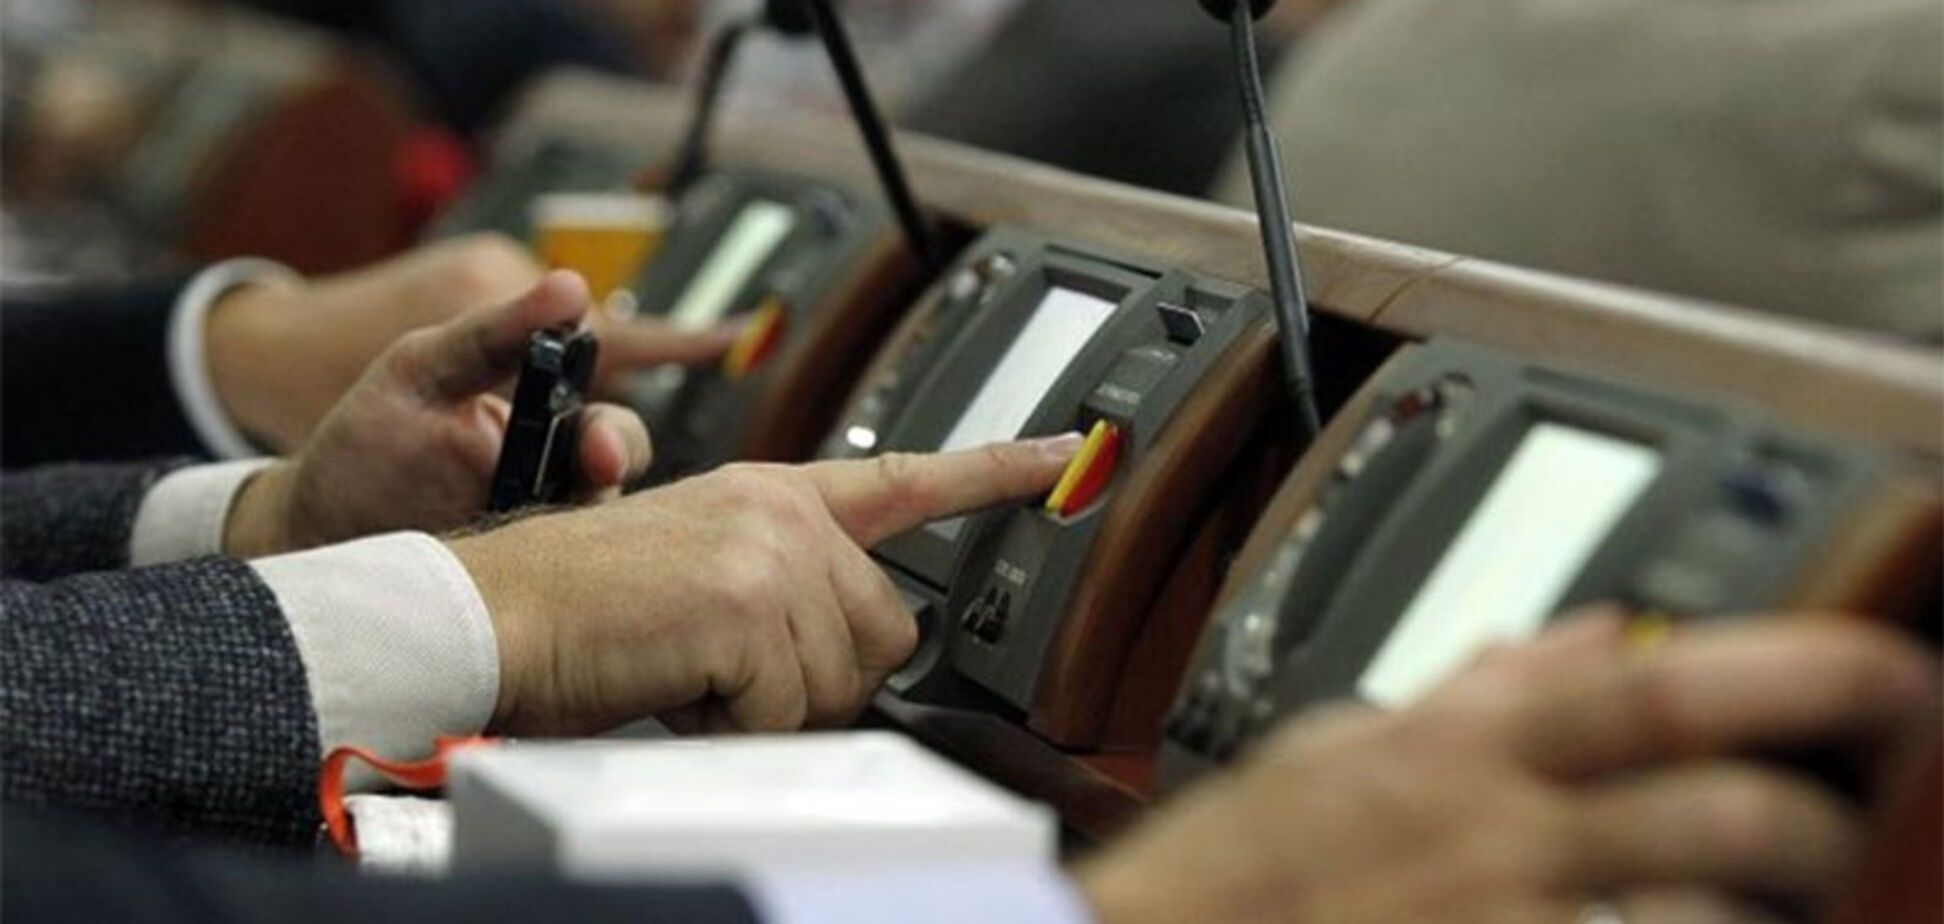 Рада продлила действие закона об особом статусе Донбасса